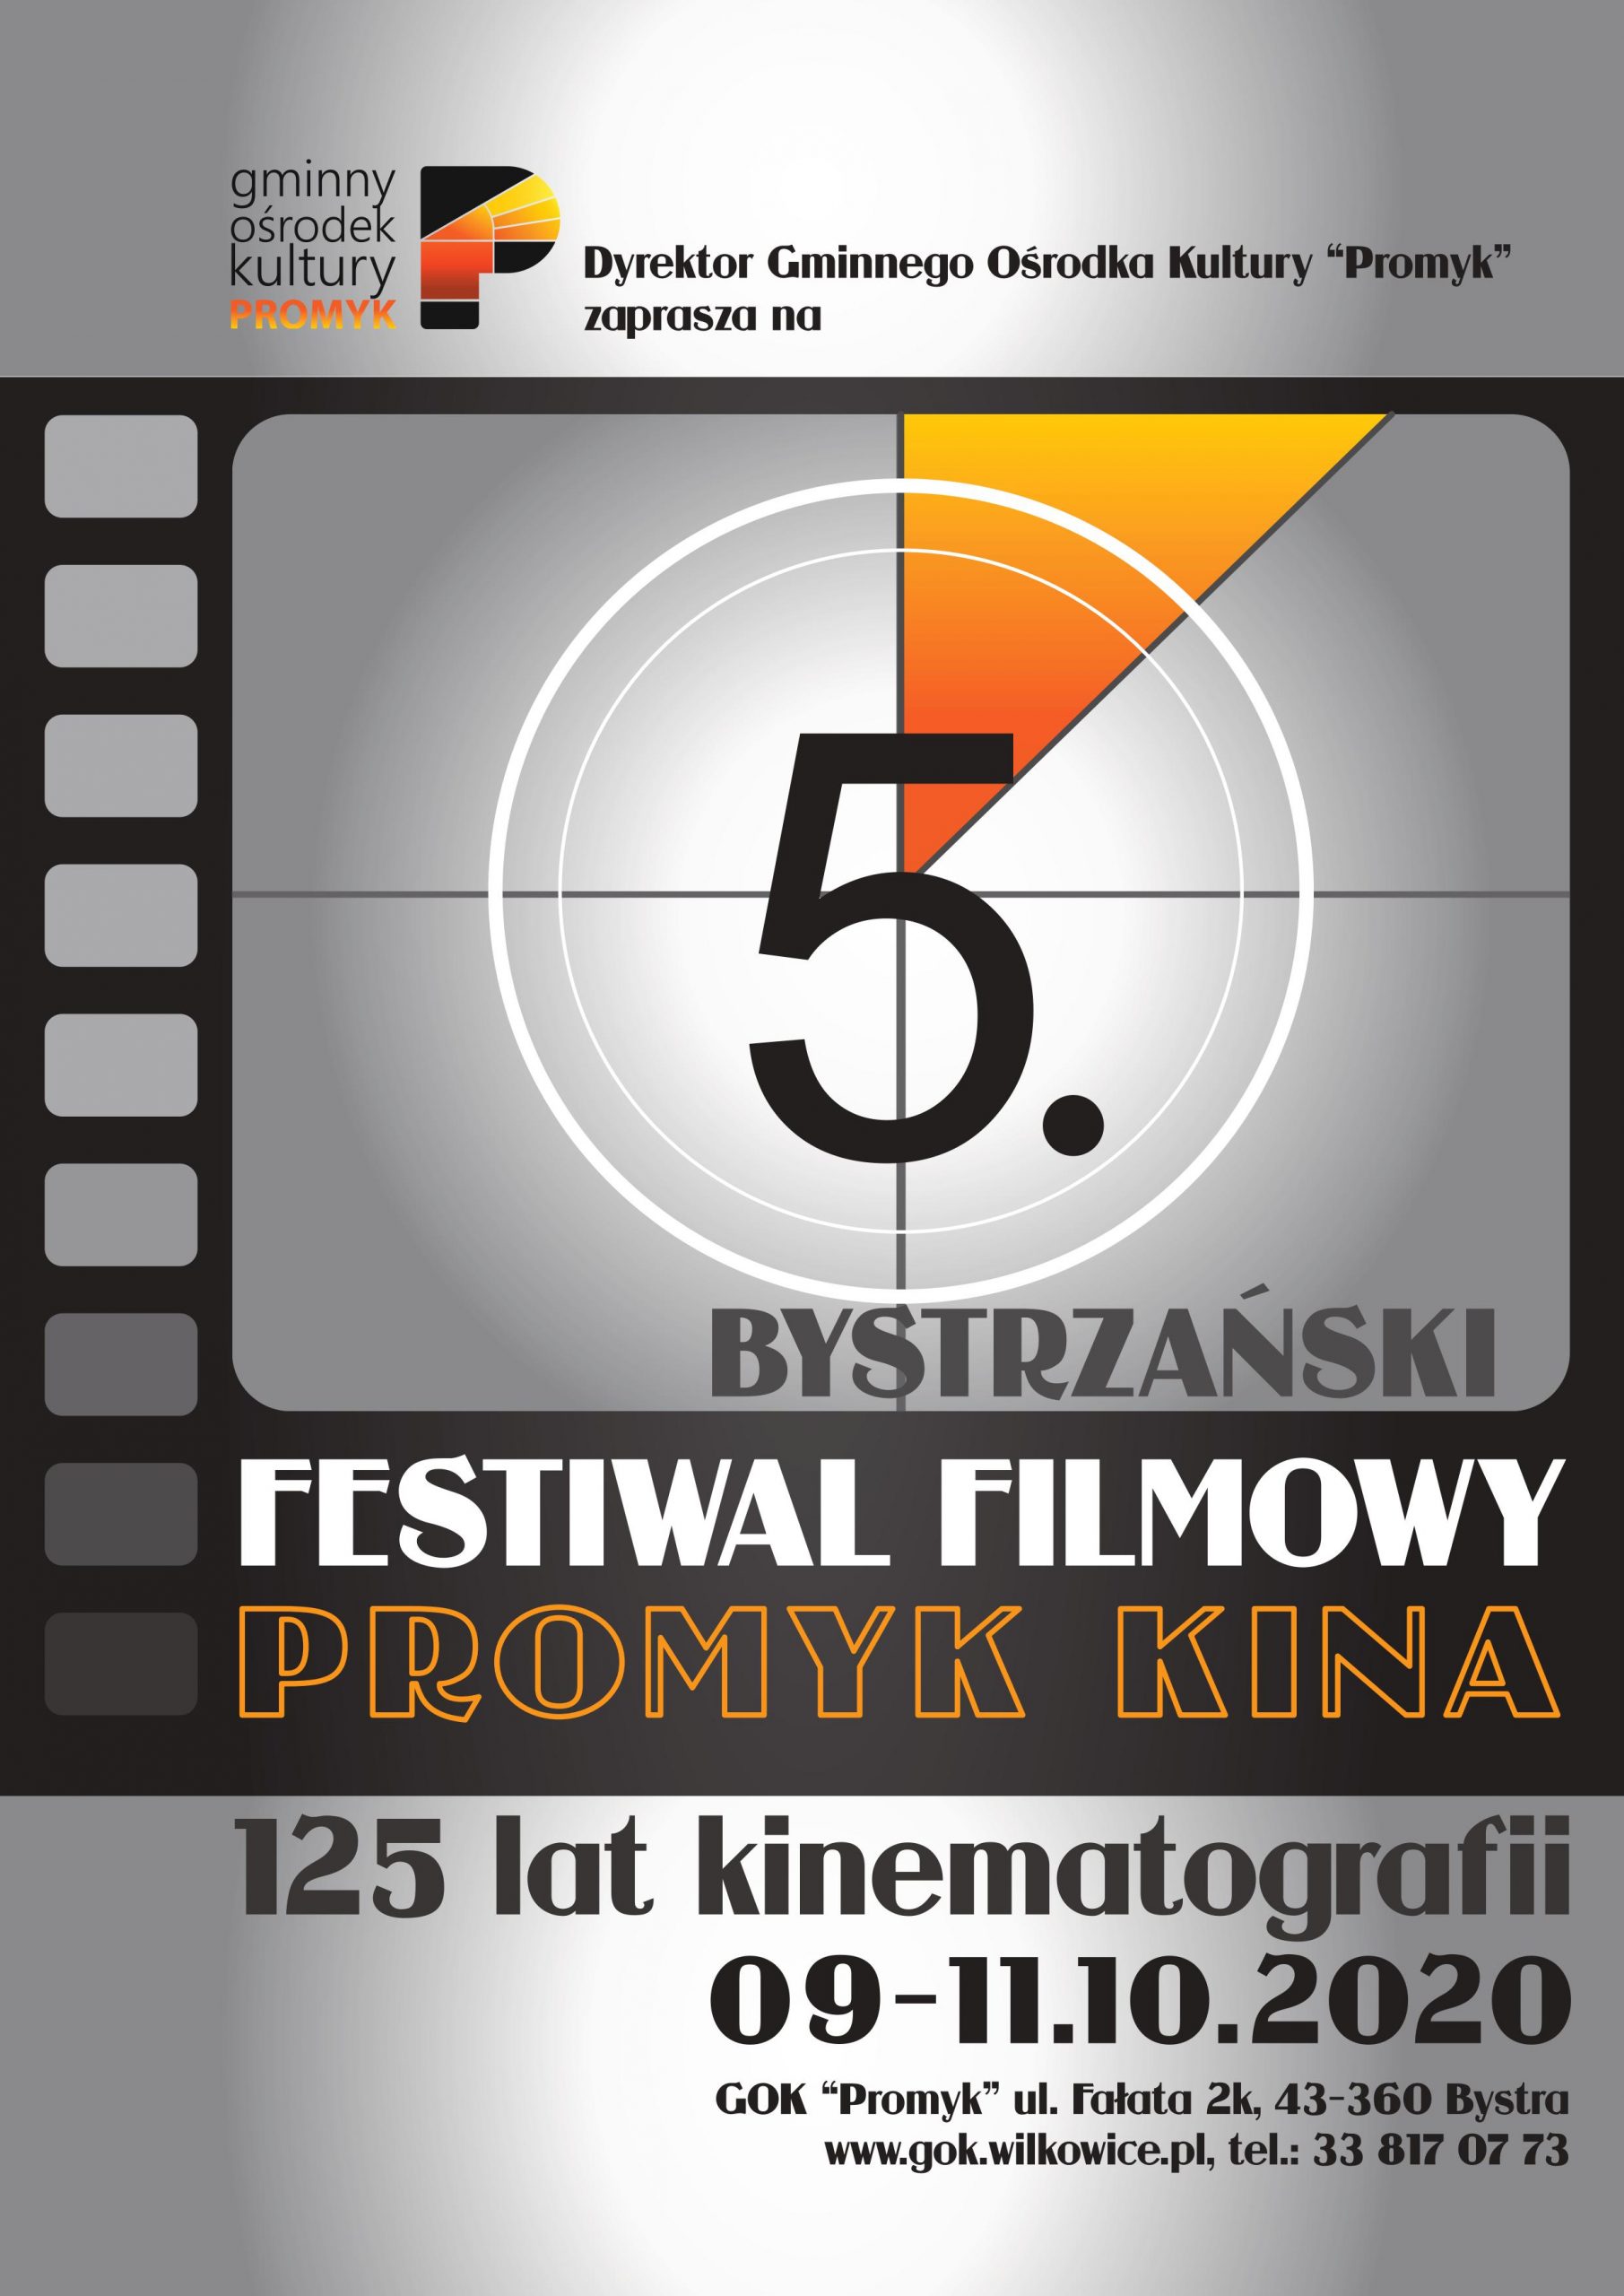 Bystrzański festiwal filmowy